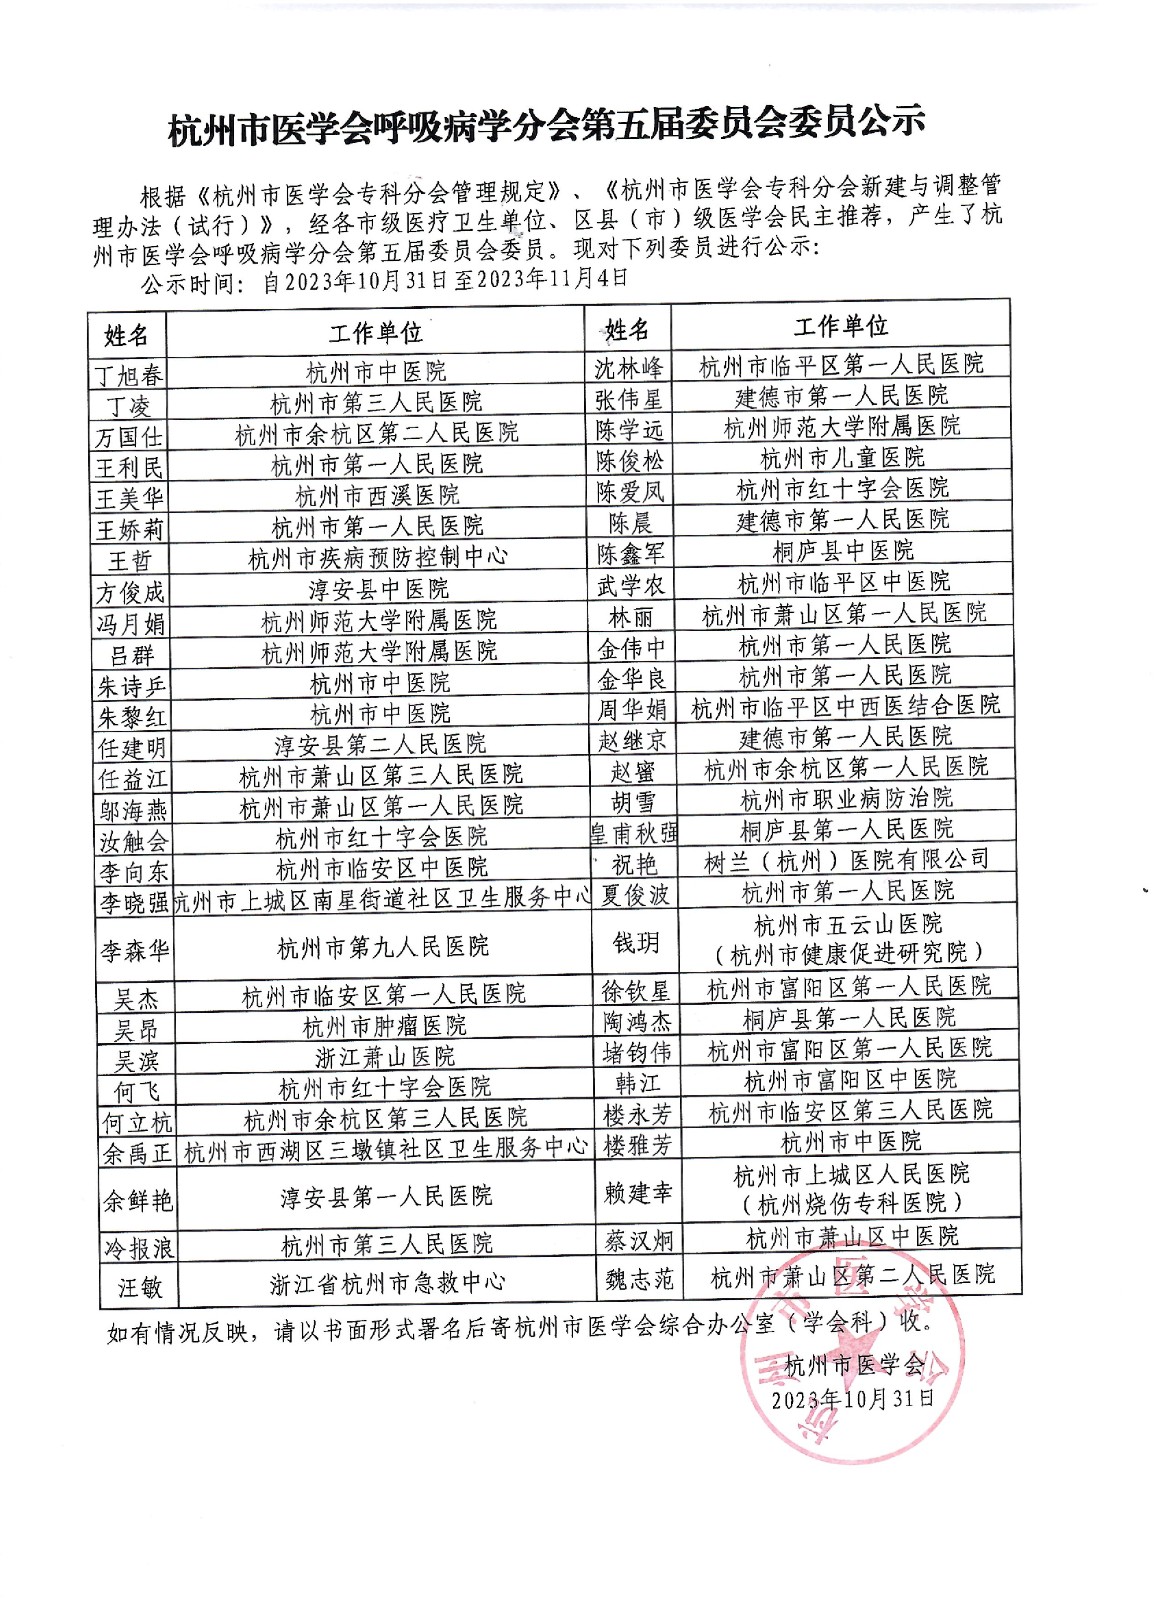 杭州市医学会呼吸病学分会第五届委员会委员公示.jpg